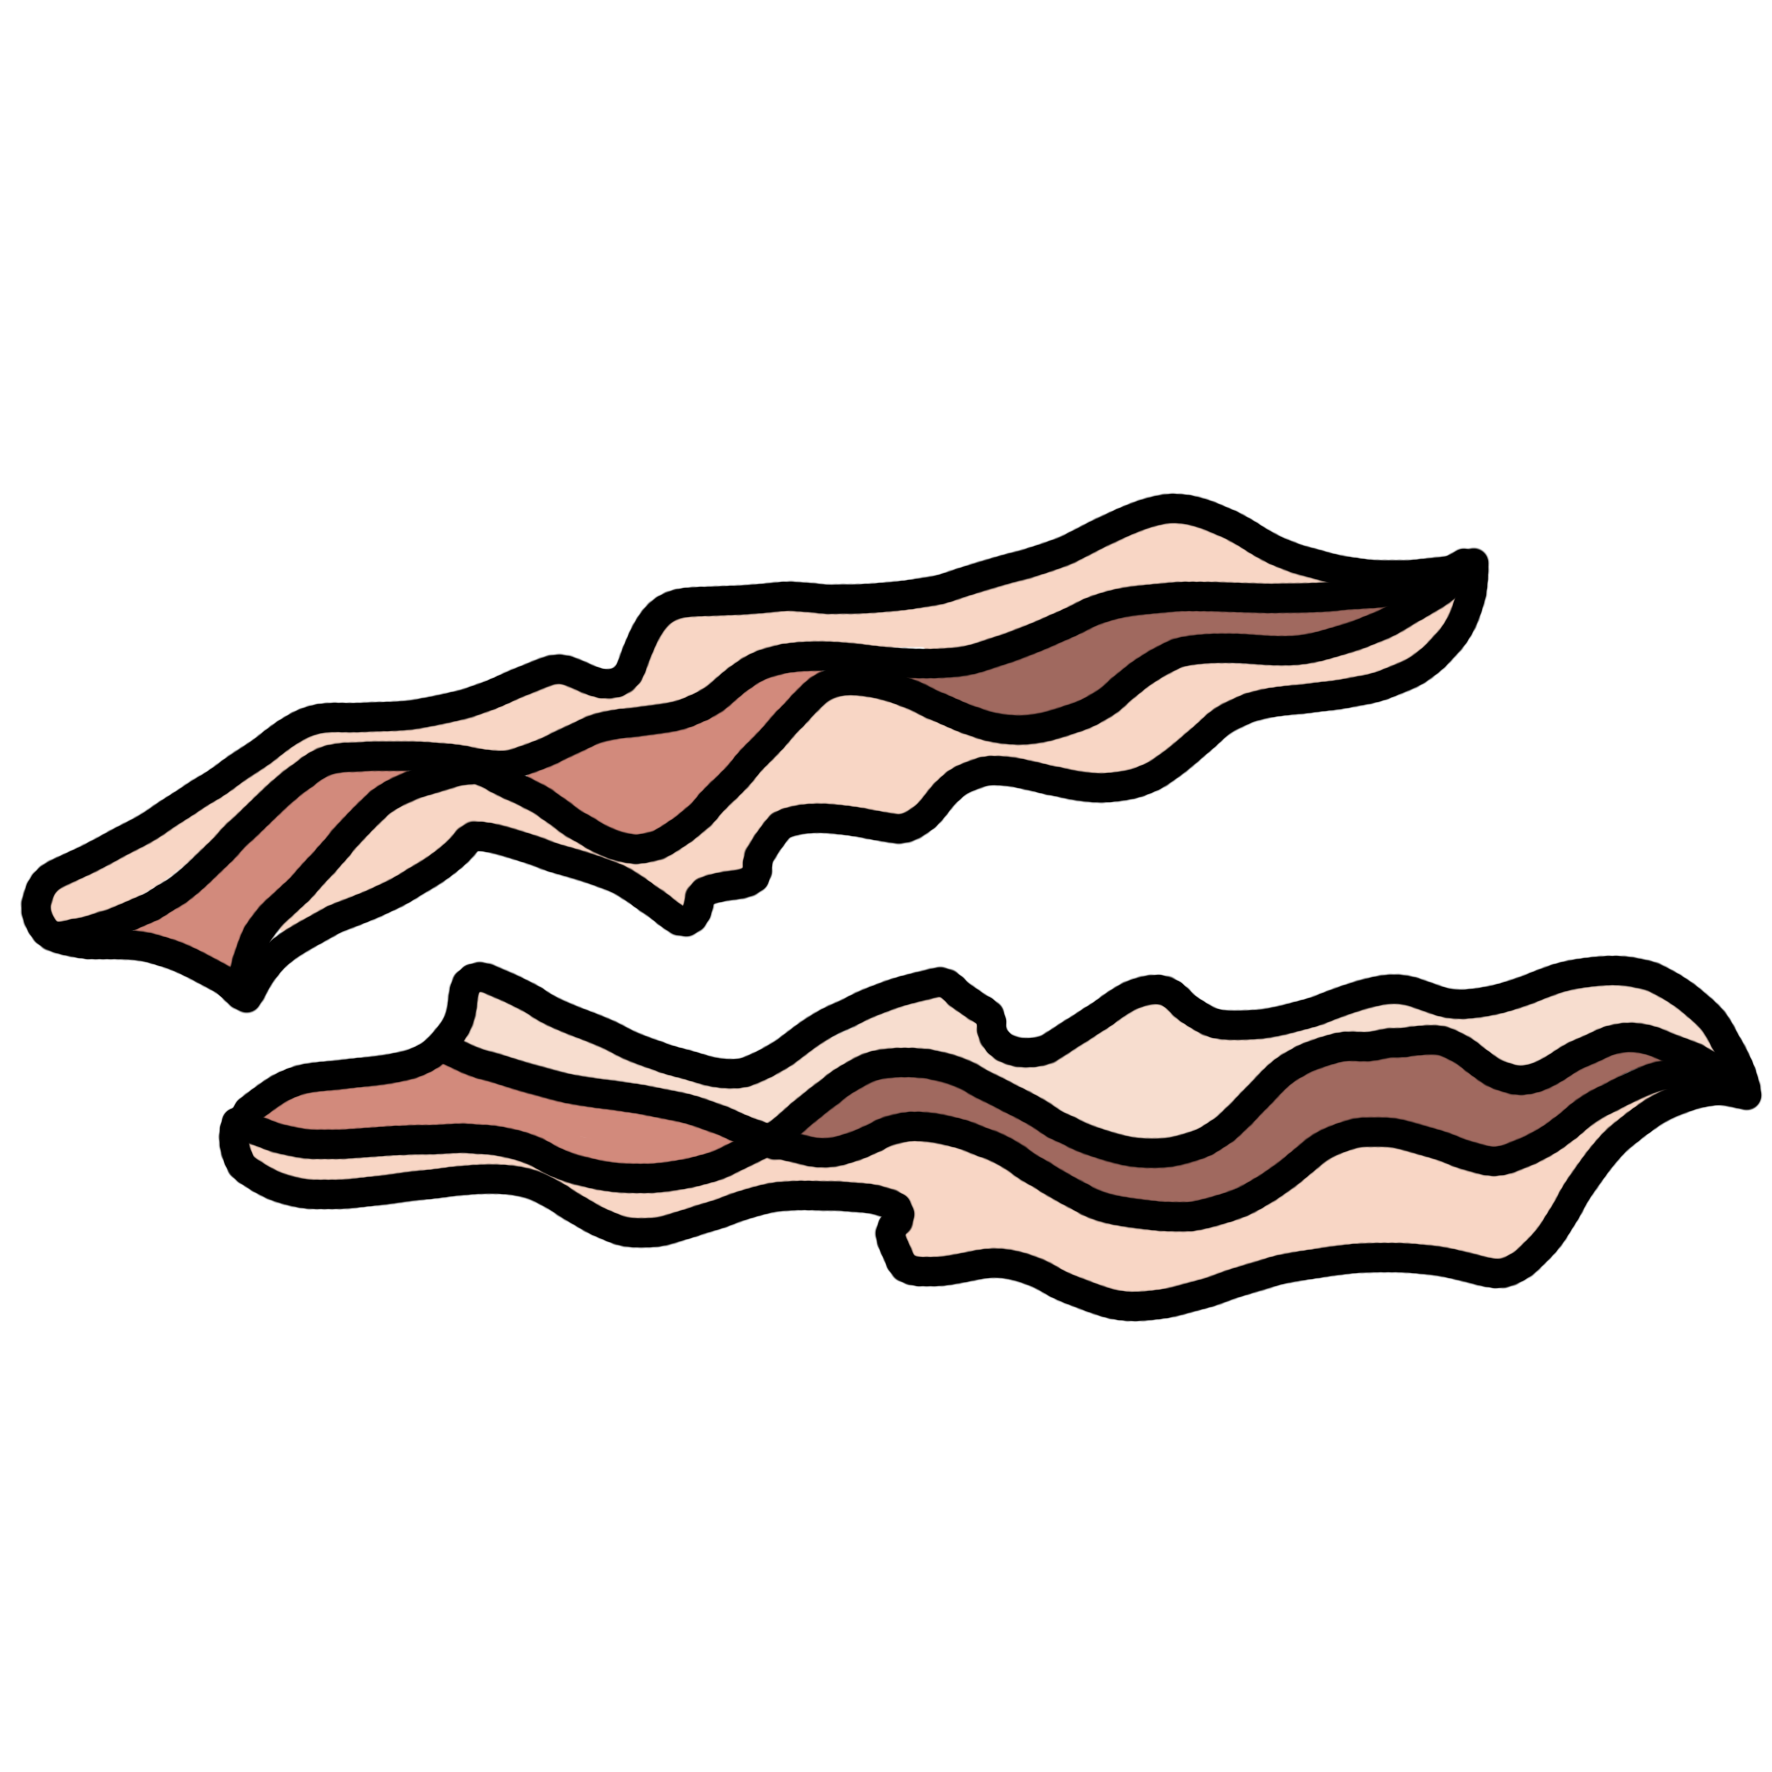 bacon-looking flat worm